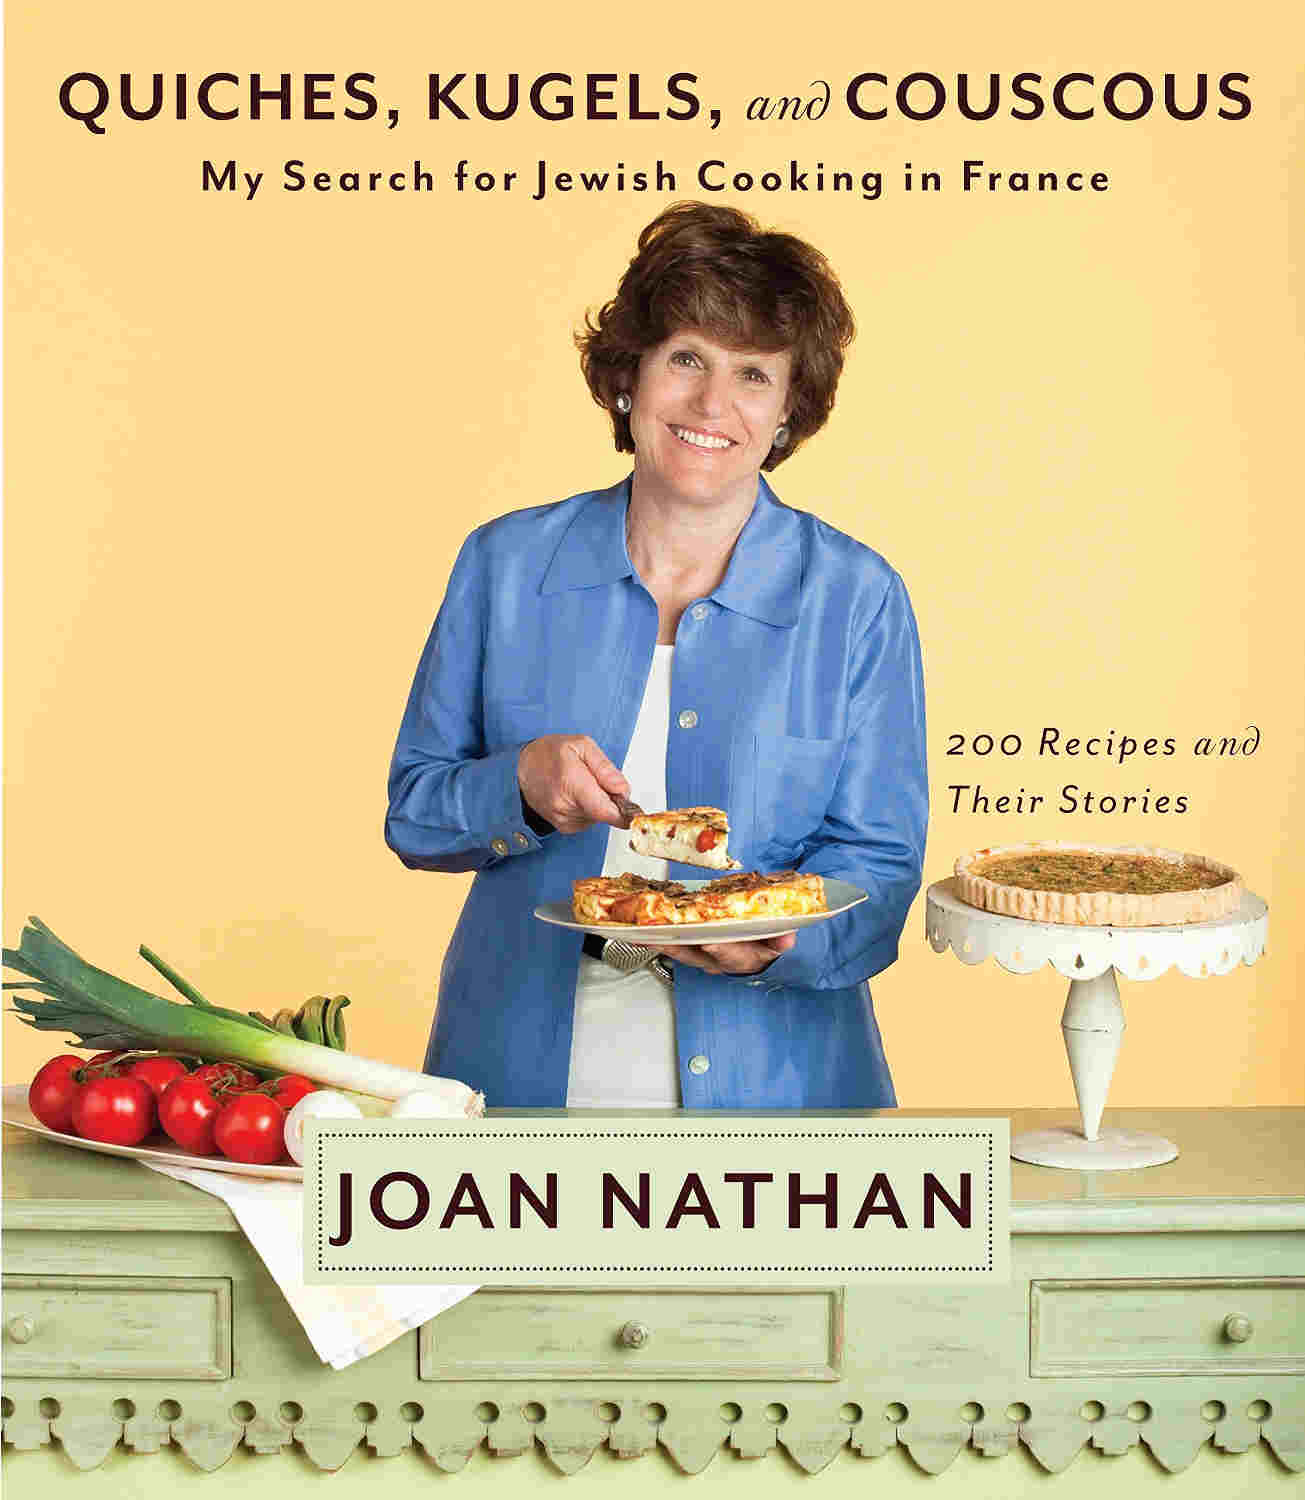 Photo de couverture du livre de Joan Nathan cuisine juive en France Jewpop